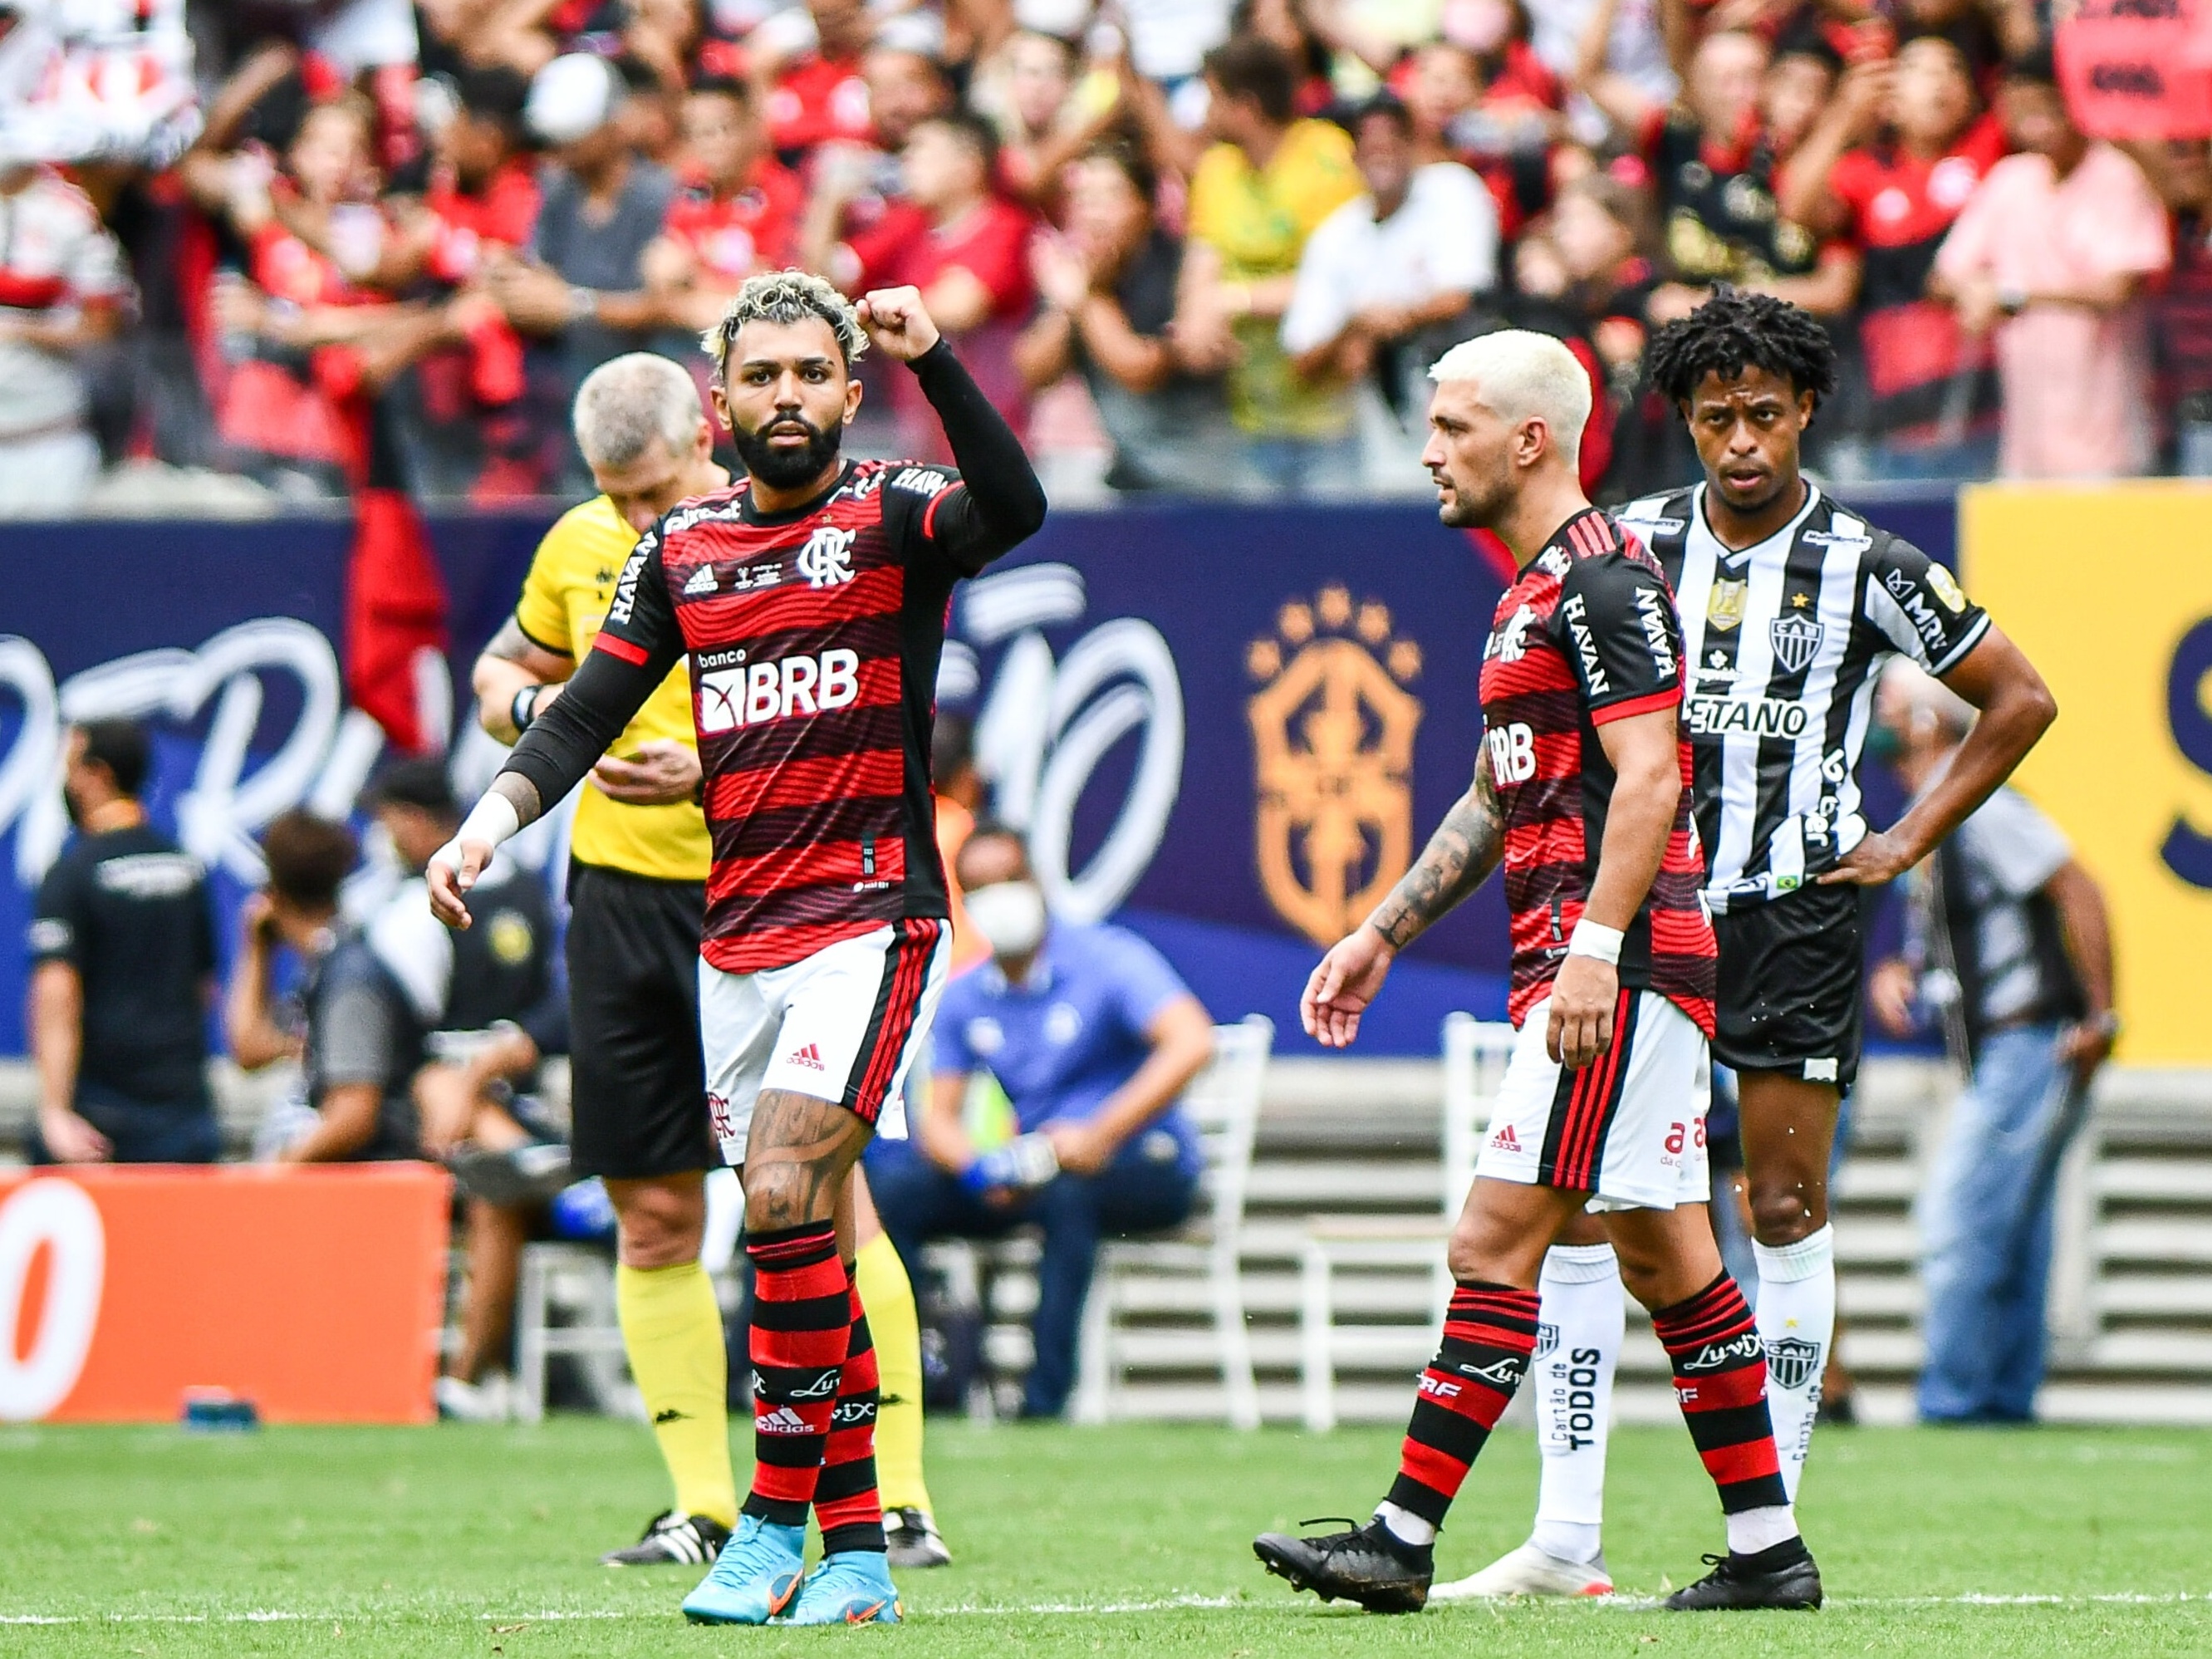 Aproveitamento em Pênaltis: Conheça os 7 jogadores do Flamengo - Flamengo  Melhor